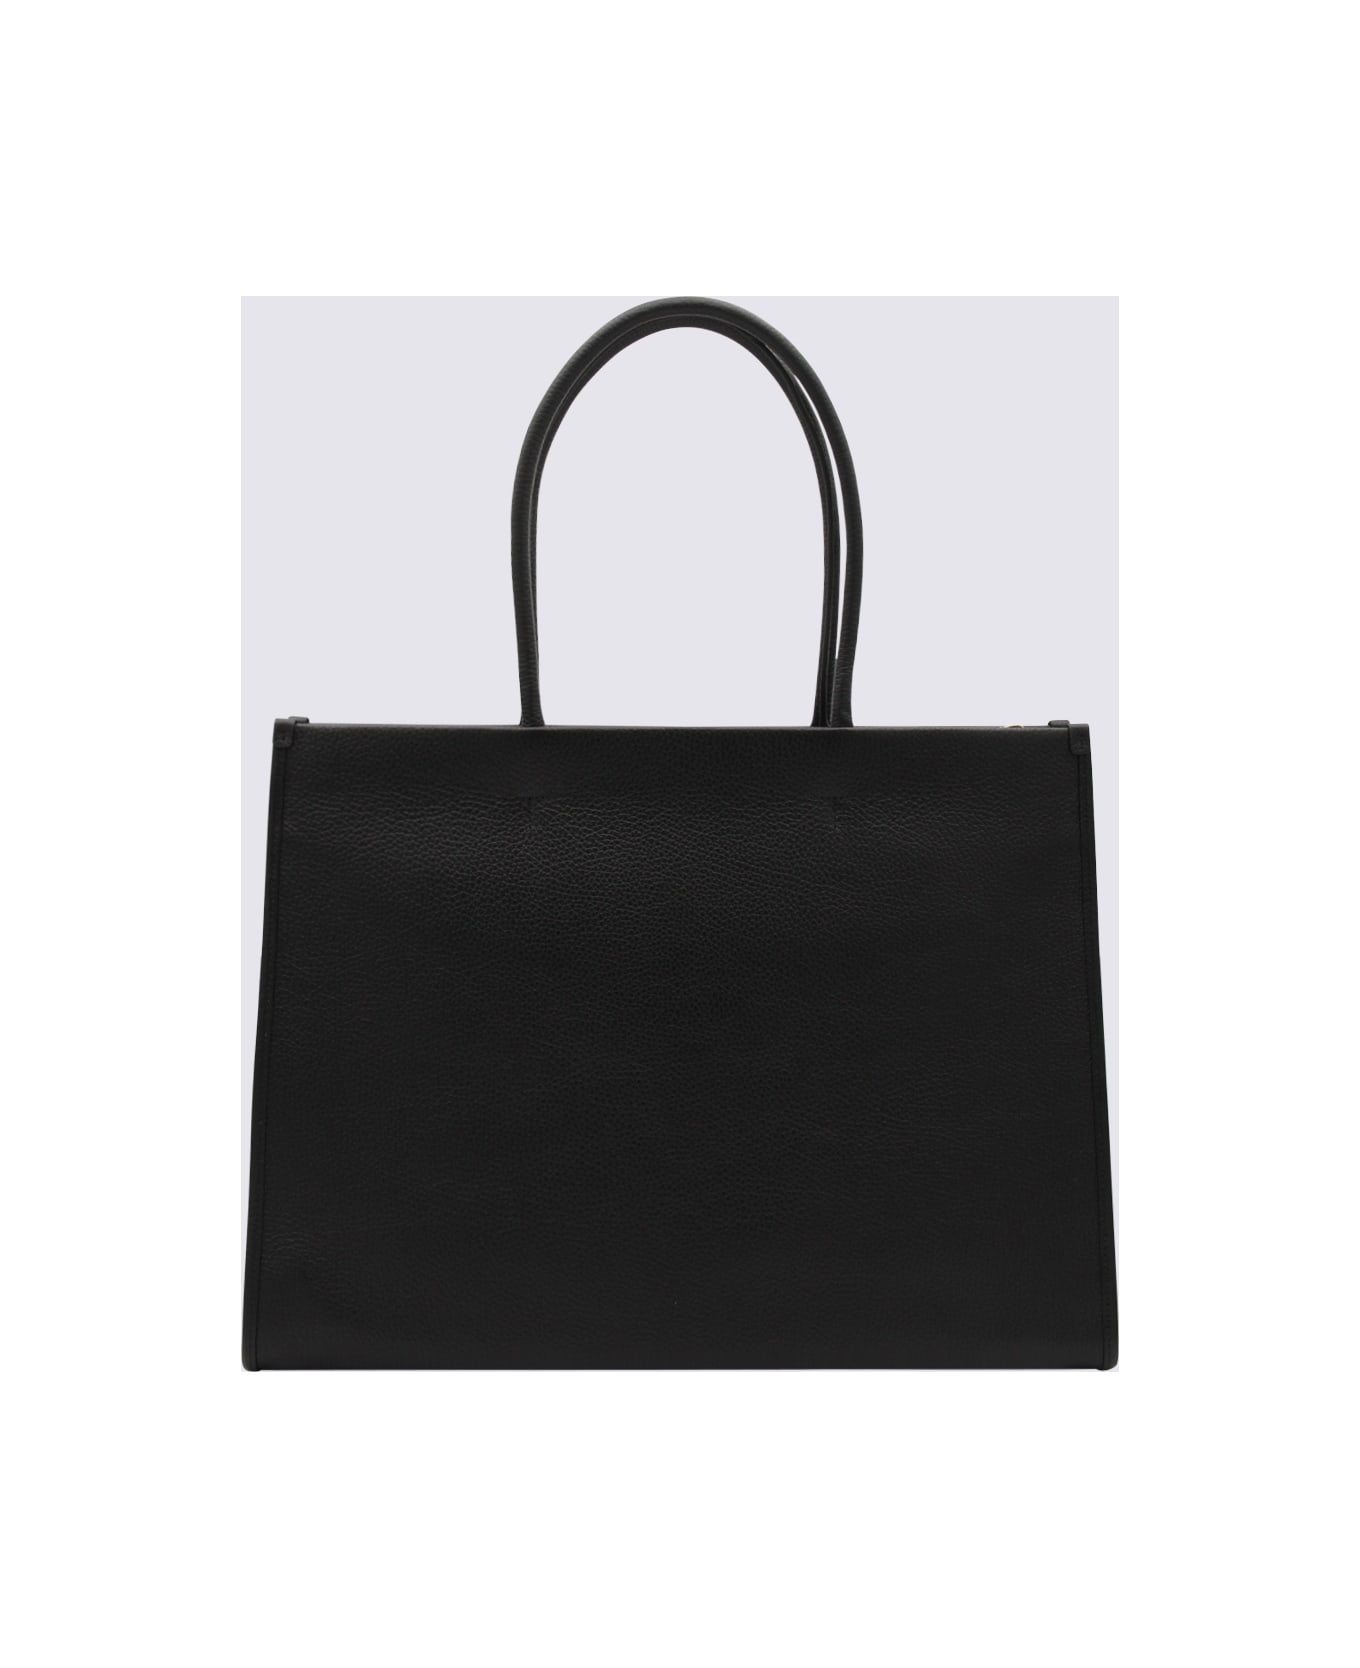 Furla Black Lether Opportunity Tote Bag - Black トートバッグ